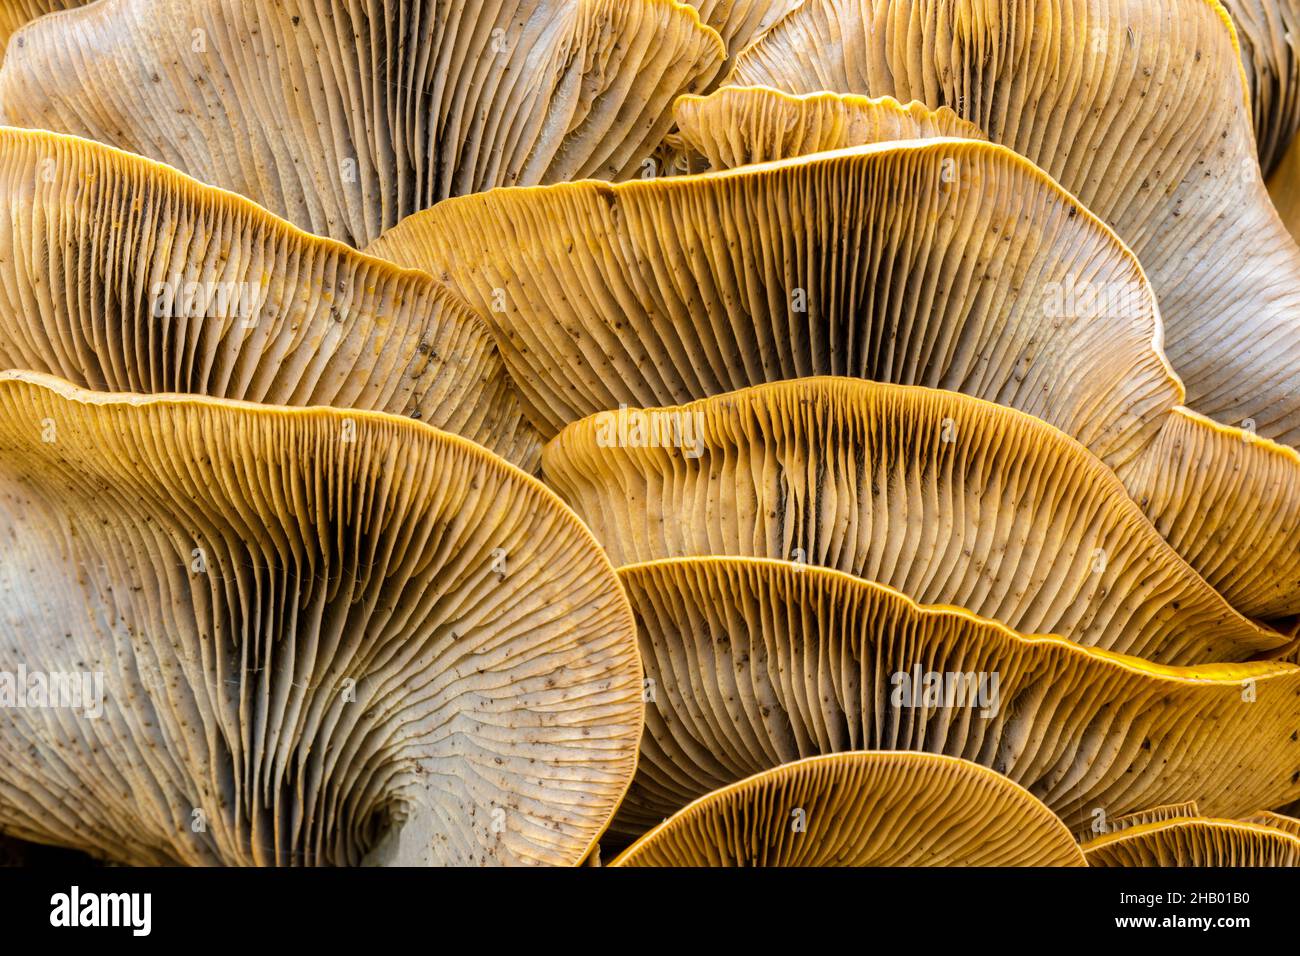 Gros plan sur un groupe de champignons Jack-o-lanterne.Foothills Park, comté de Santa Clara, Californie, États-Unis. Banque D'Images